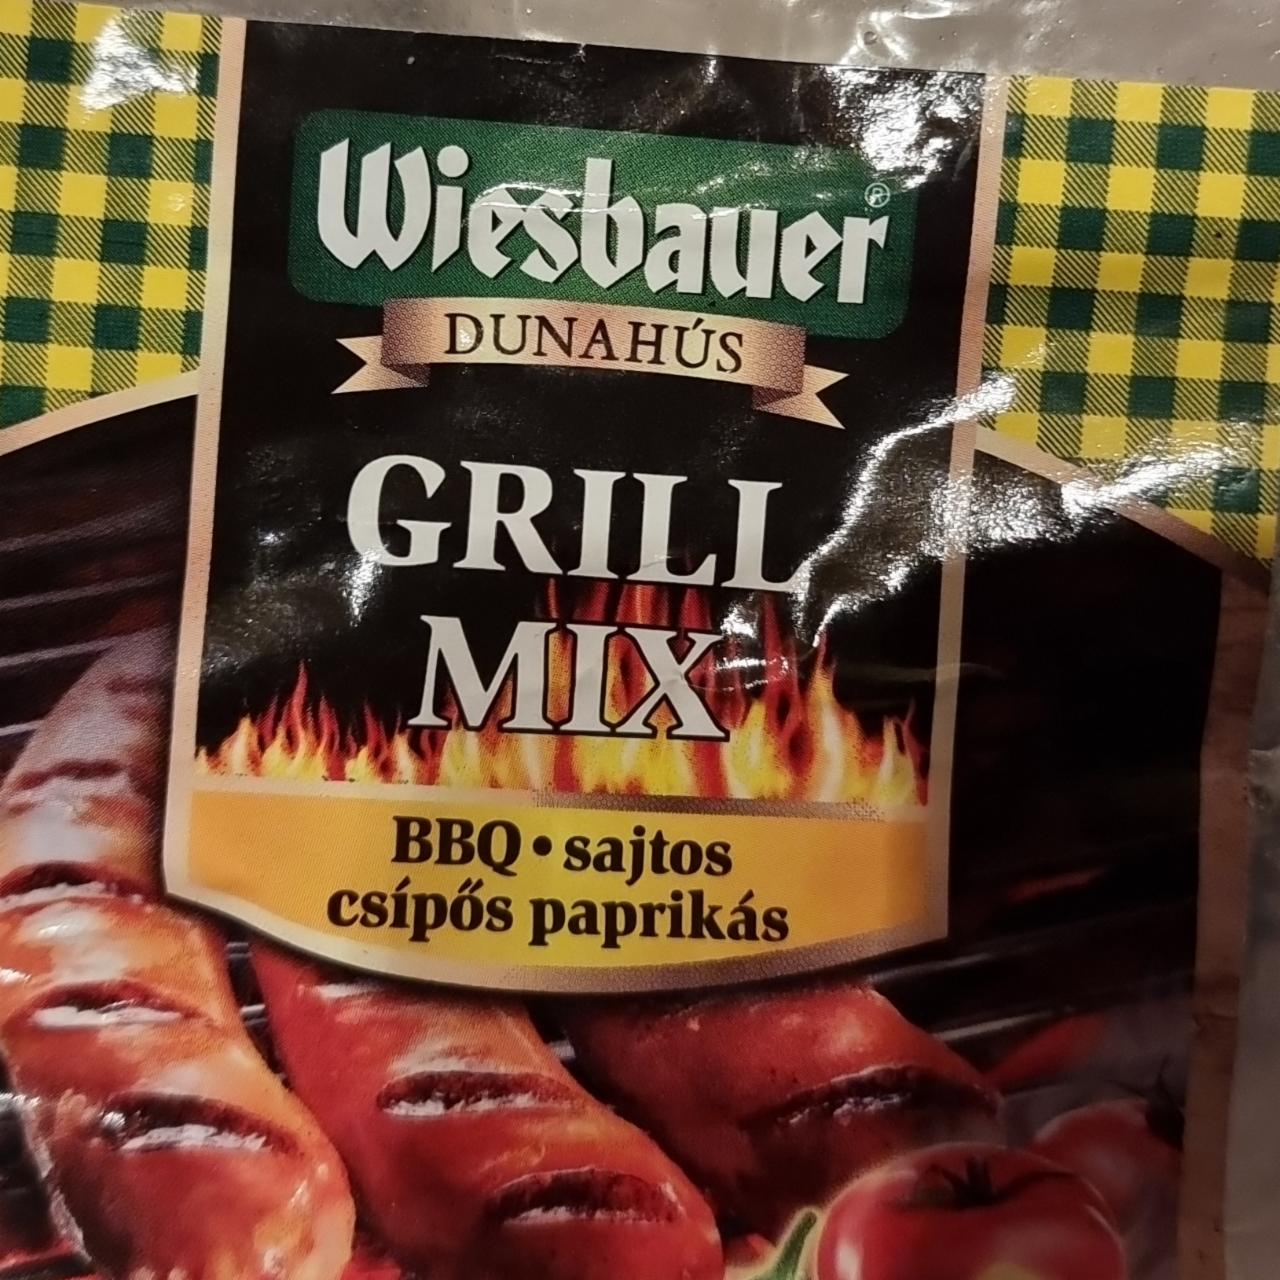 Képek - Grill mix BBQ sajtos csípős paprikás Wiesbauer